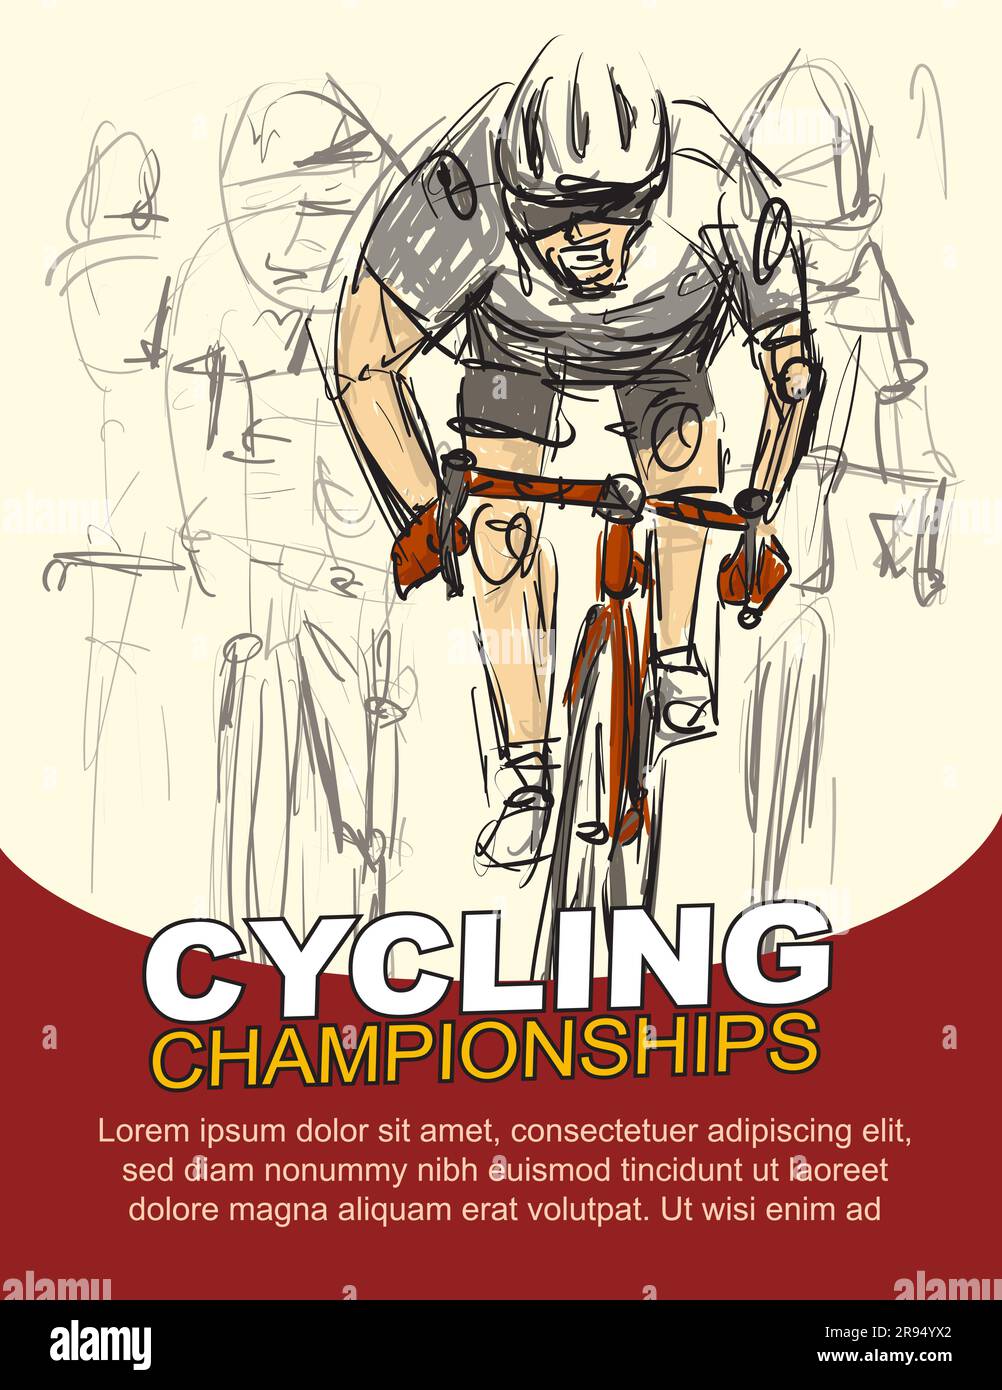 Radsport-Meisterschaft. Poster für Road-Bike-Events. Grobe Zeichnung. vektordarstellung Stock Vektor